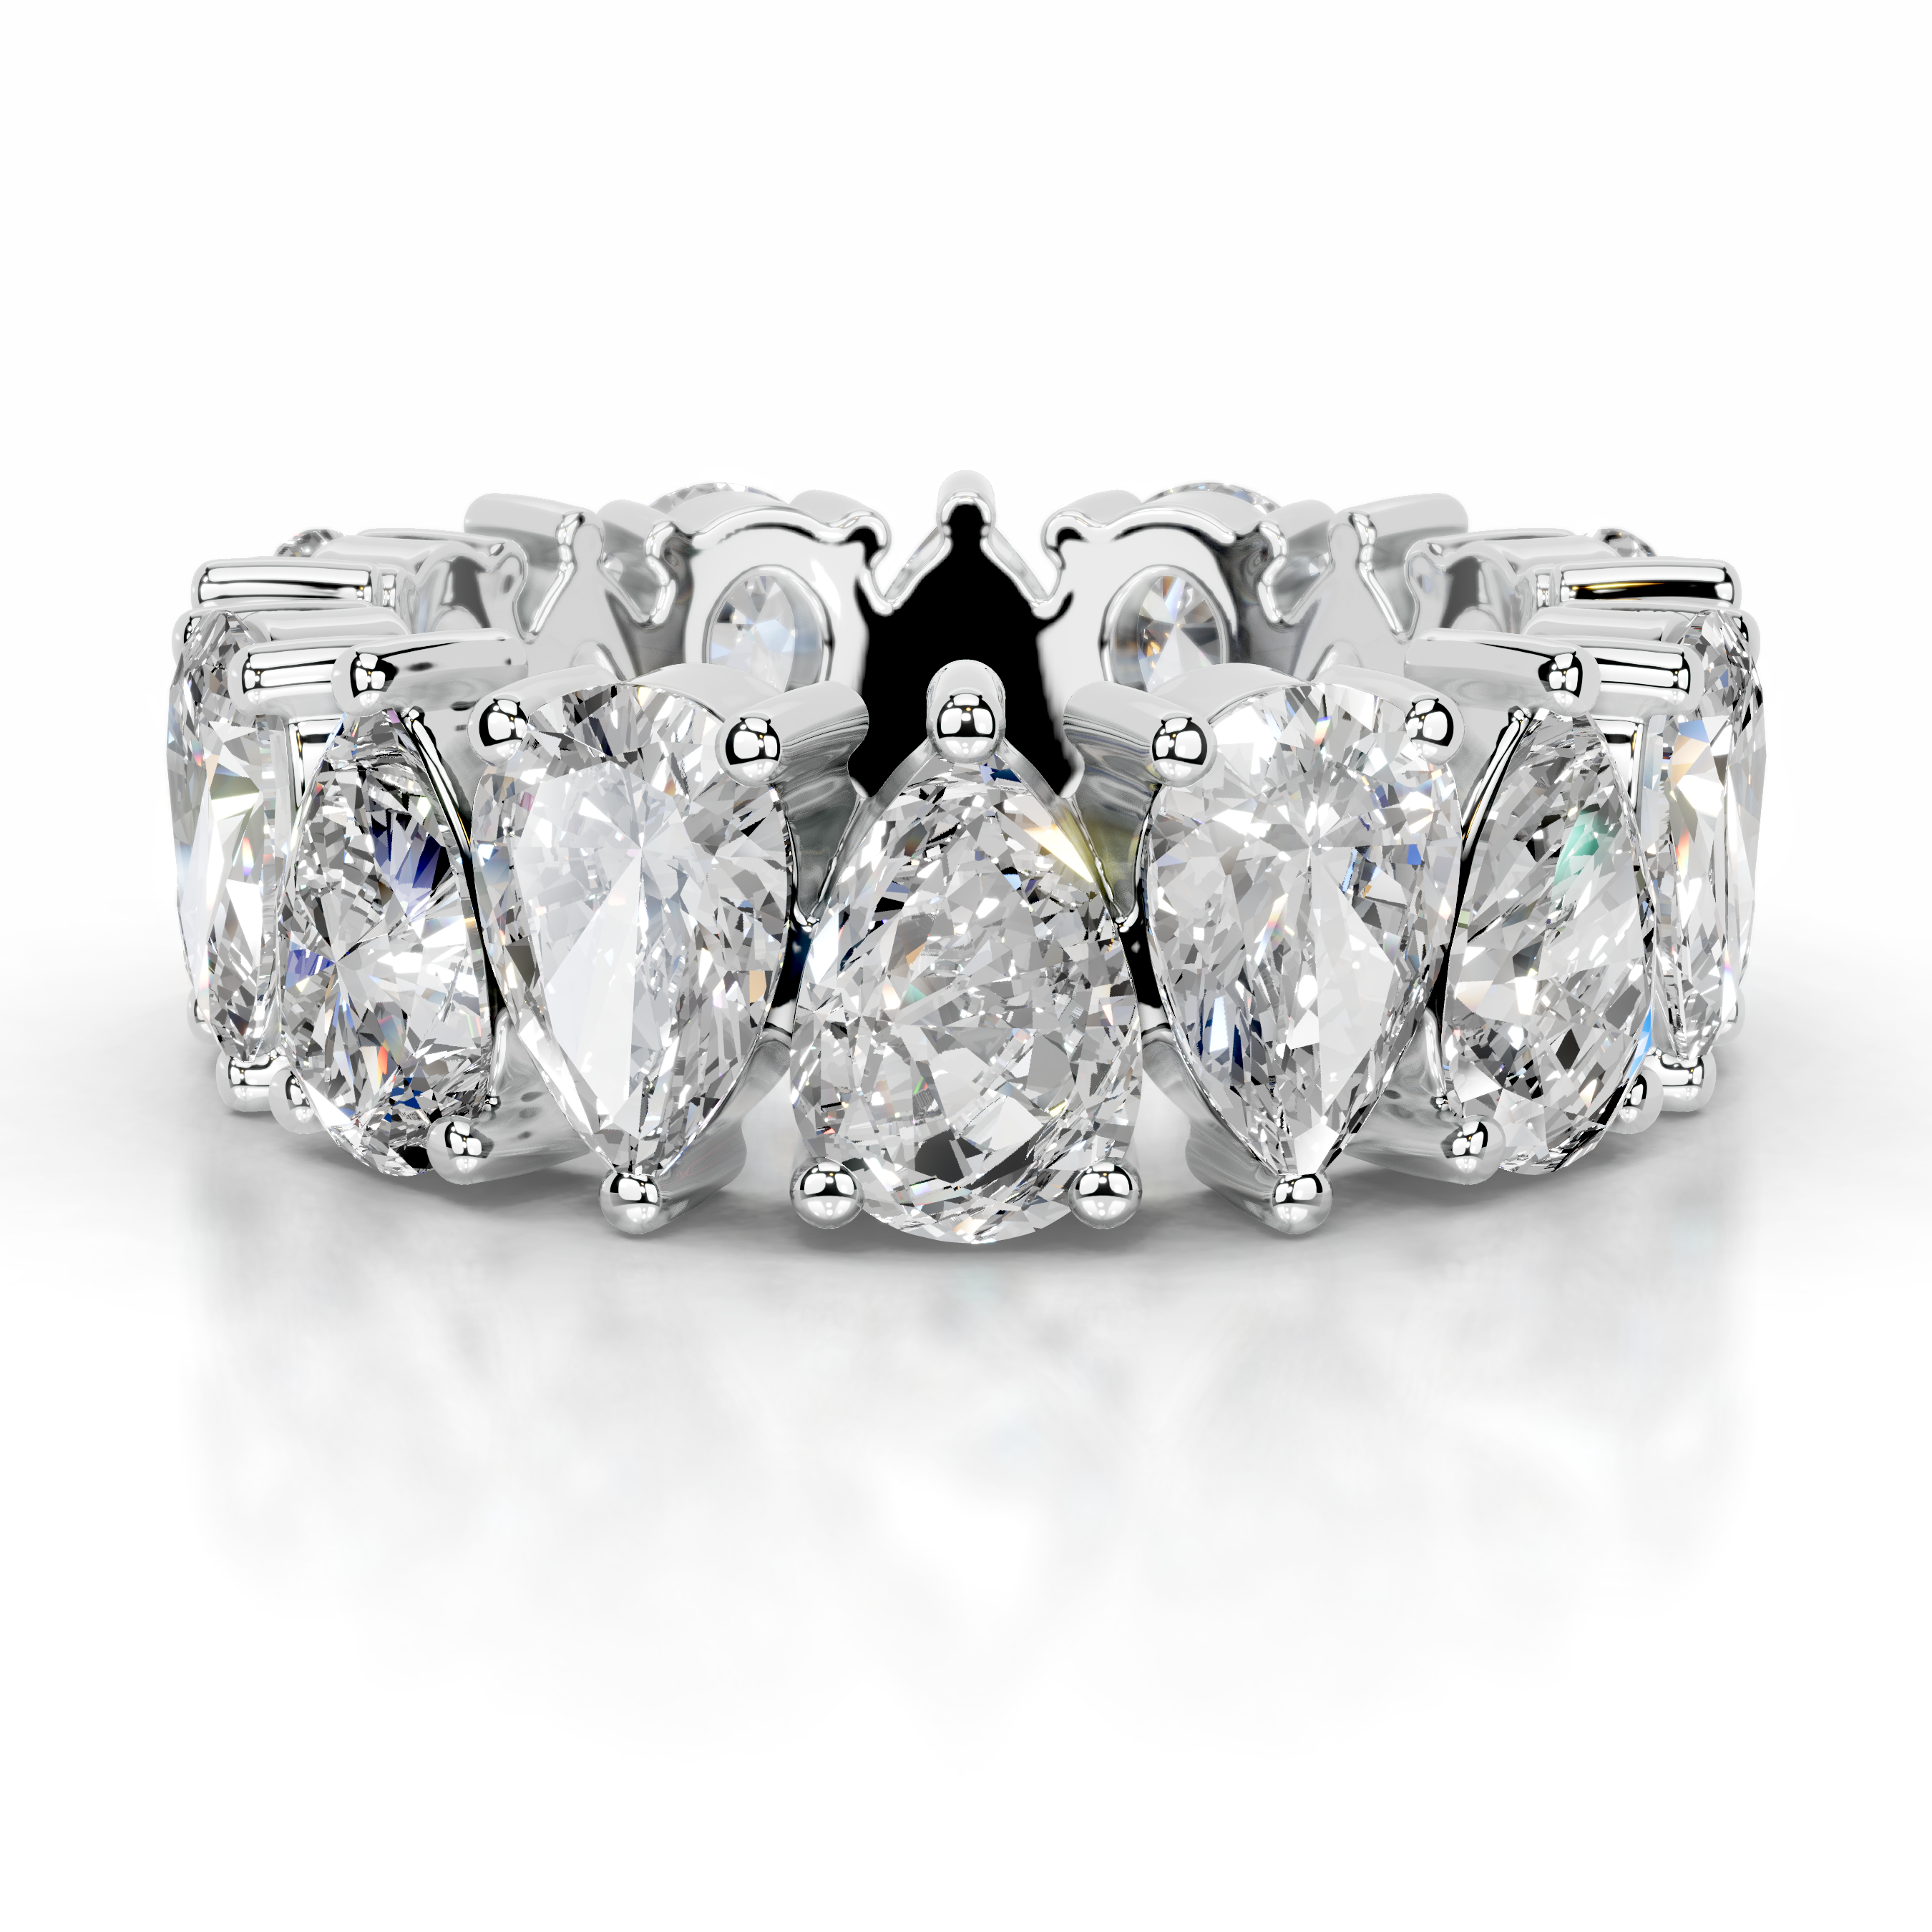 Sarah Diamond Wedding Ring   (6 Carat) -18K White Gold